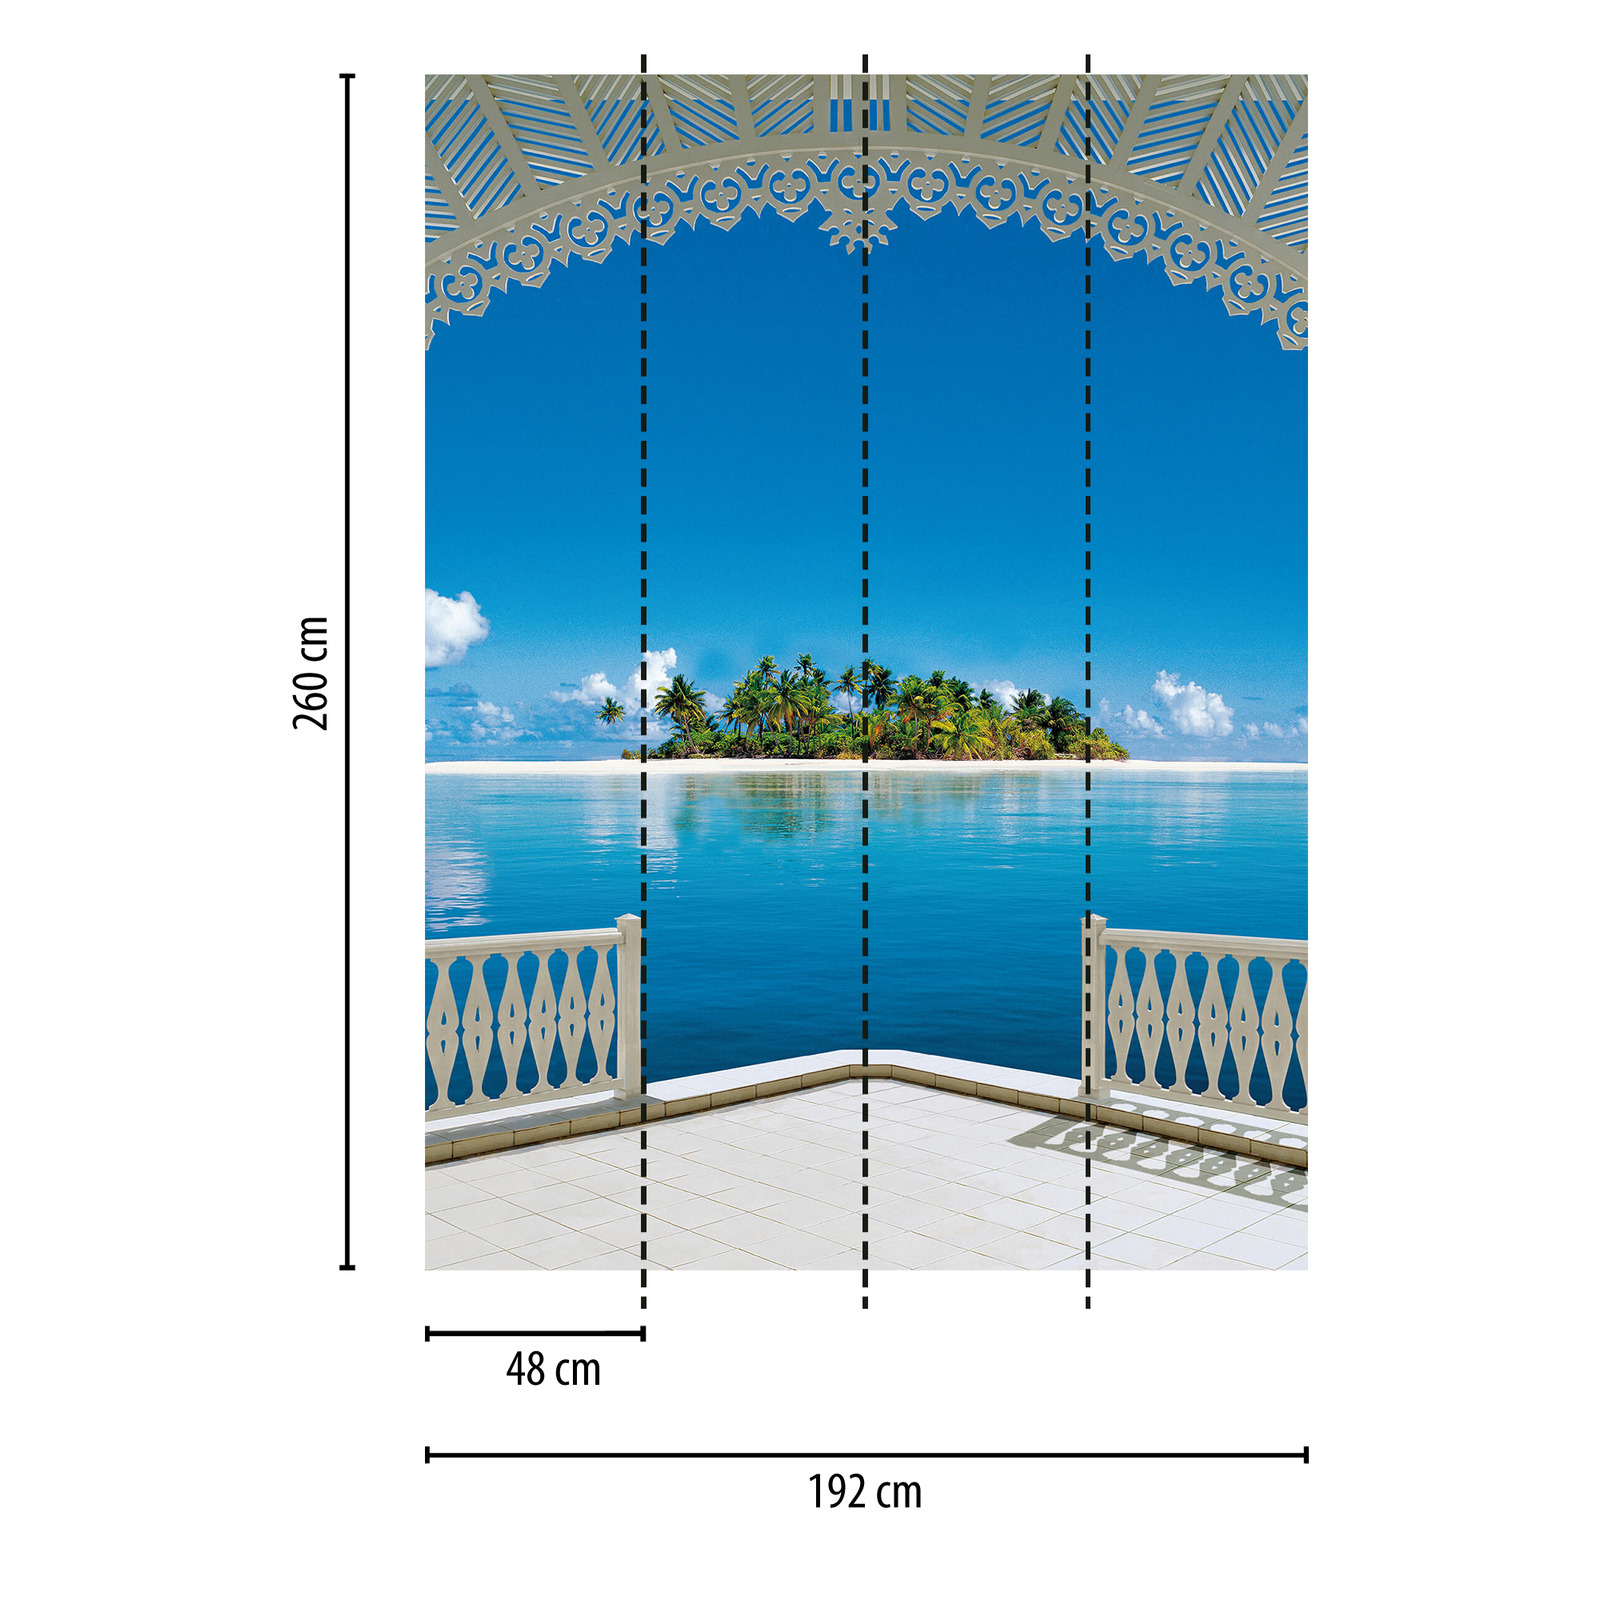             Fotomurali vista isola tropicale, formato verticale
        